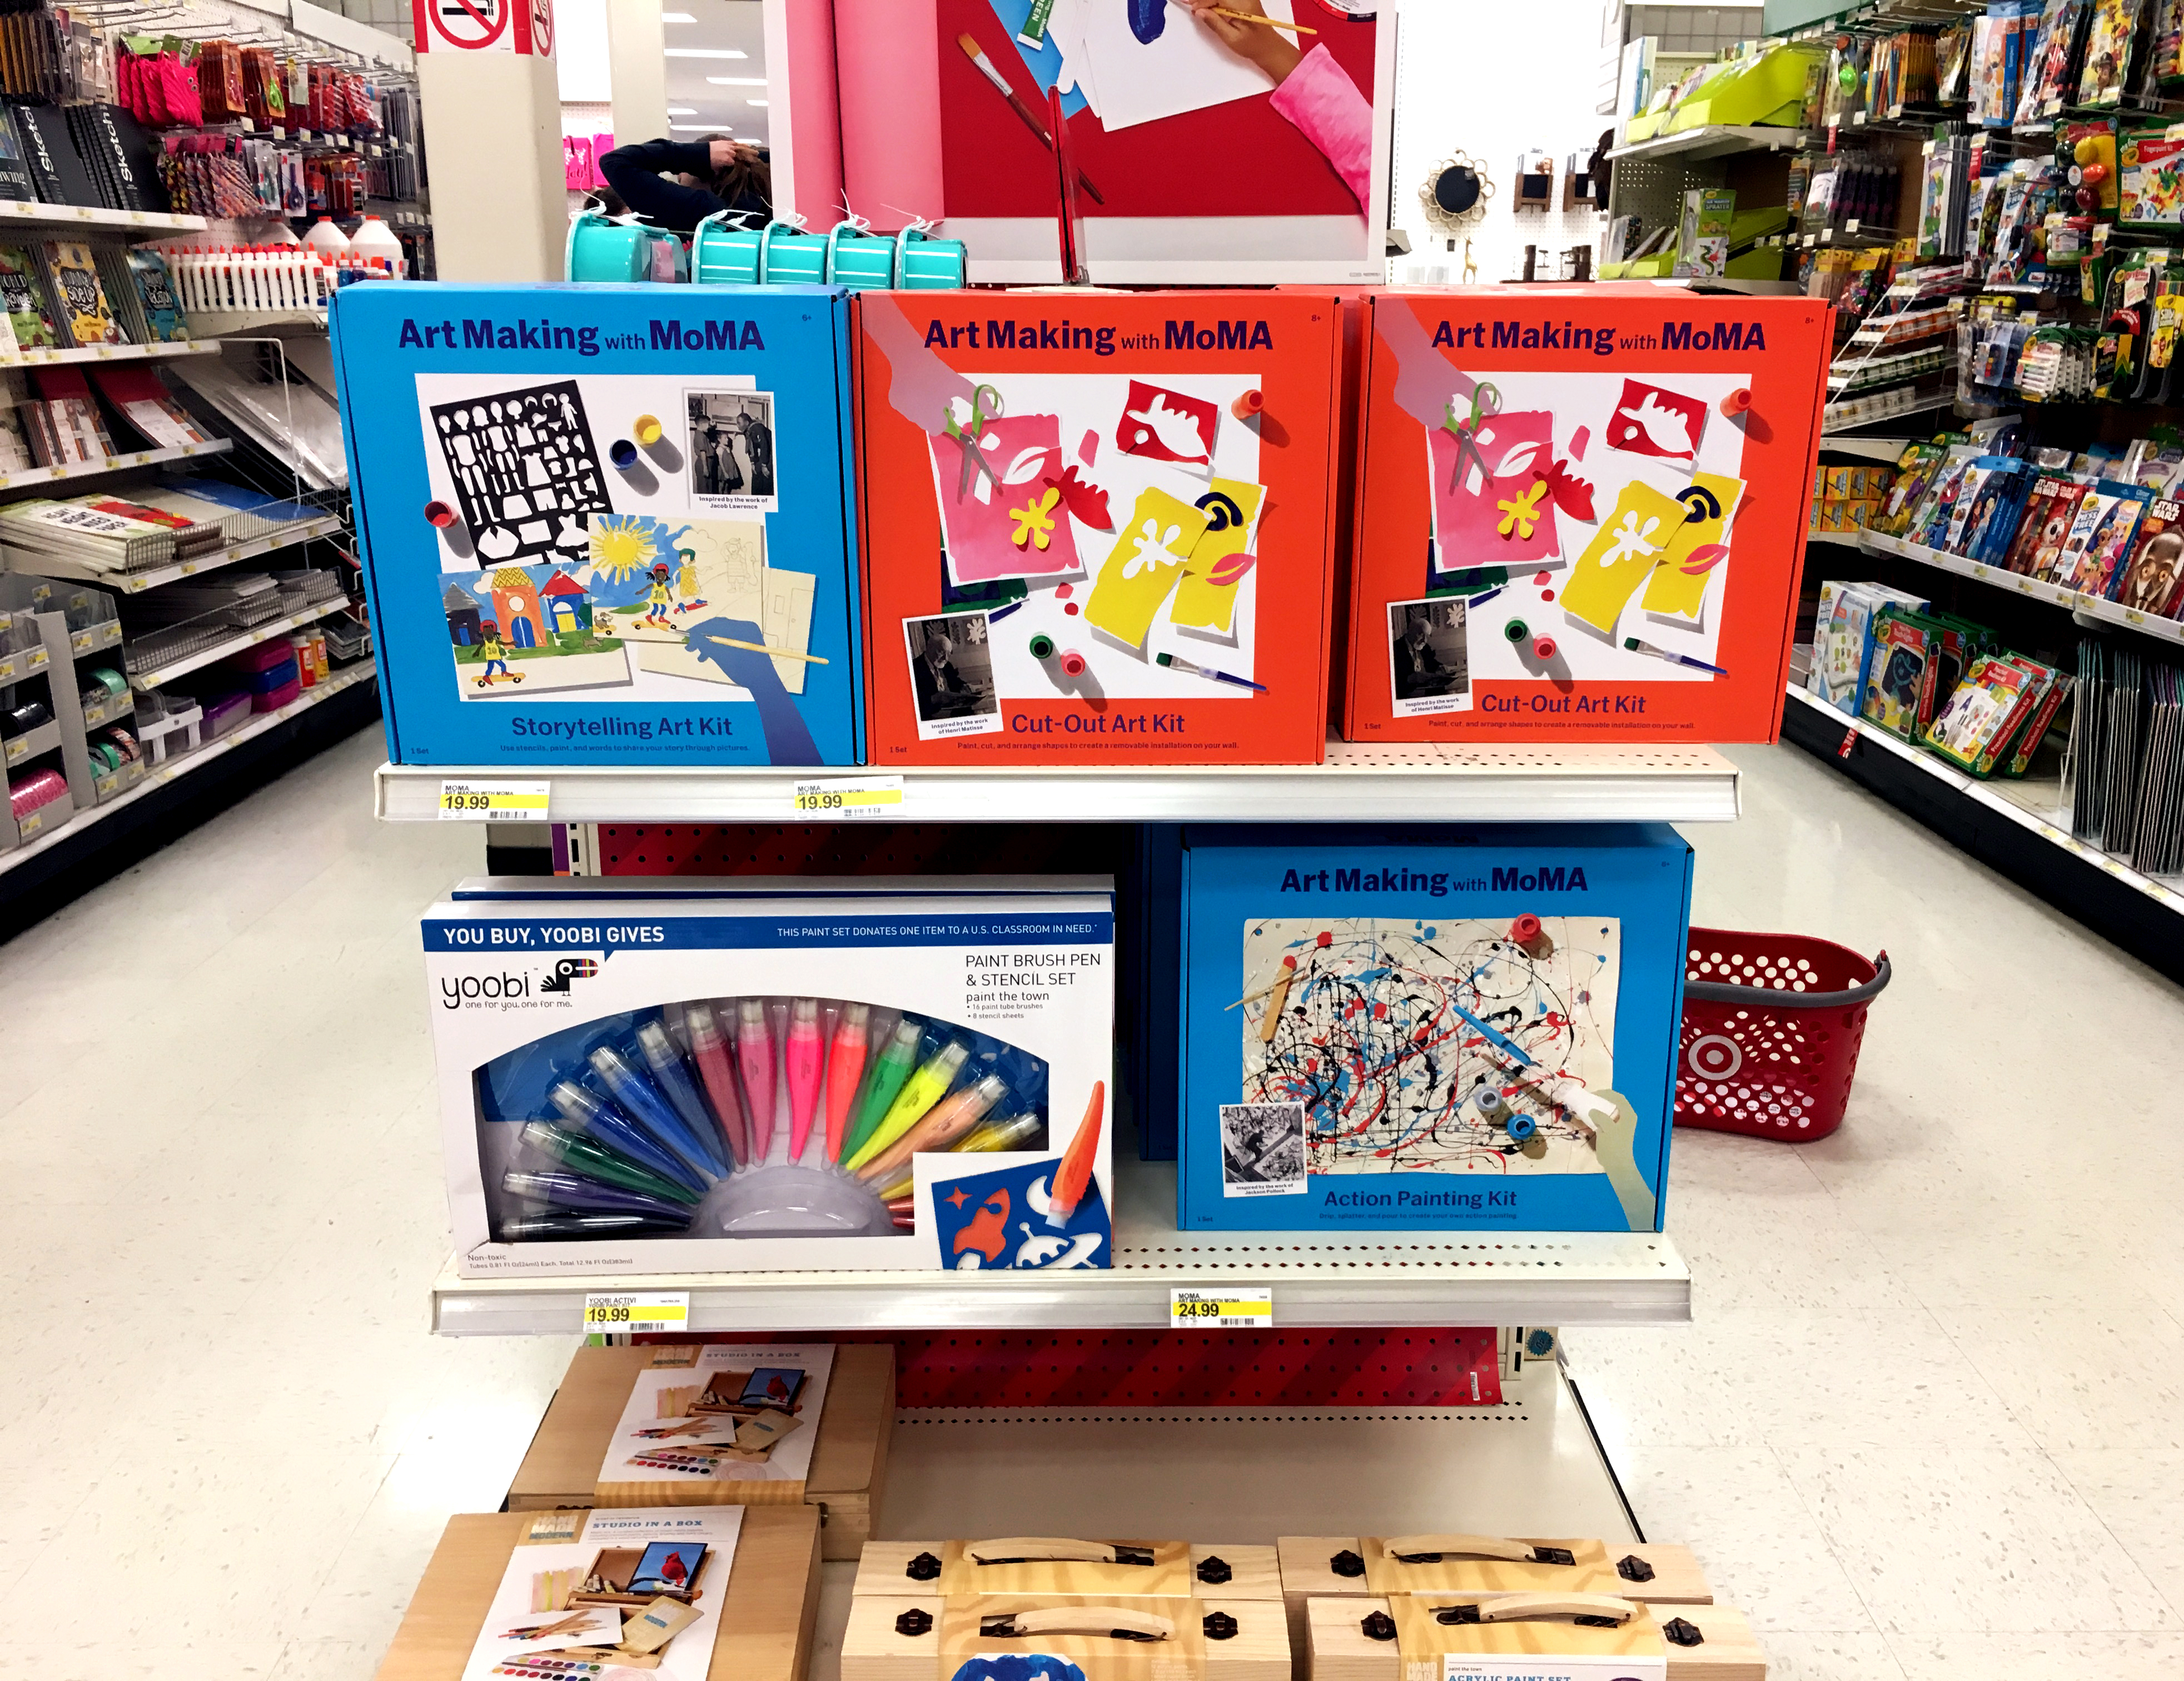 A display at Target featuring Art Making at MoMA activity kits